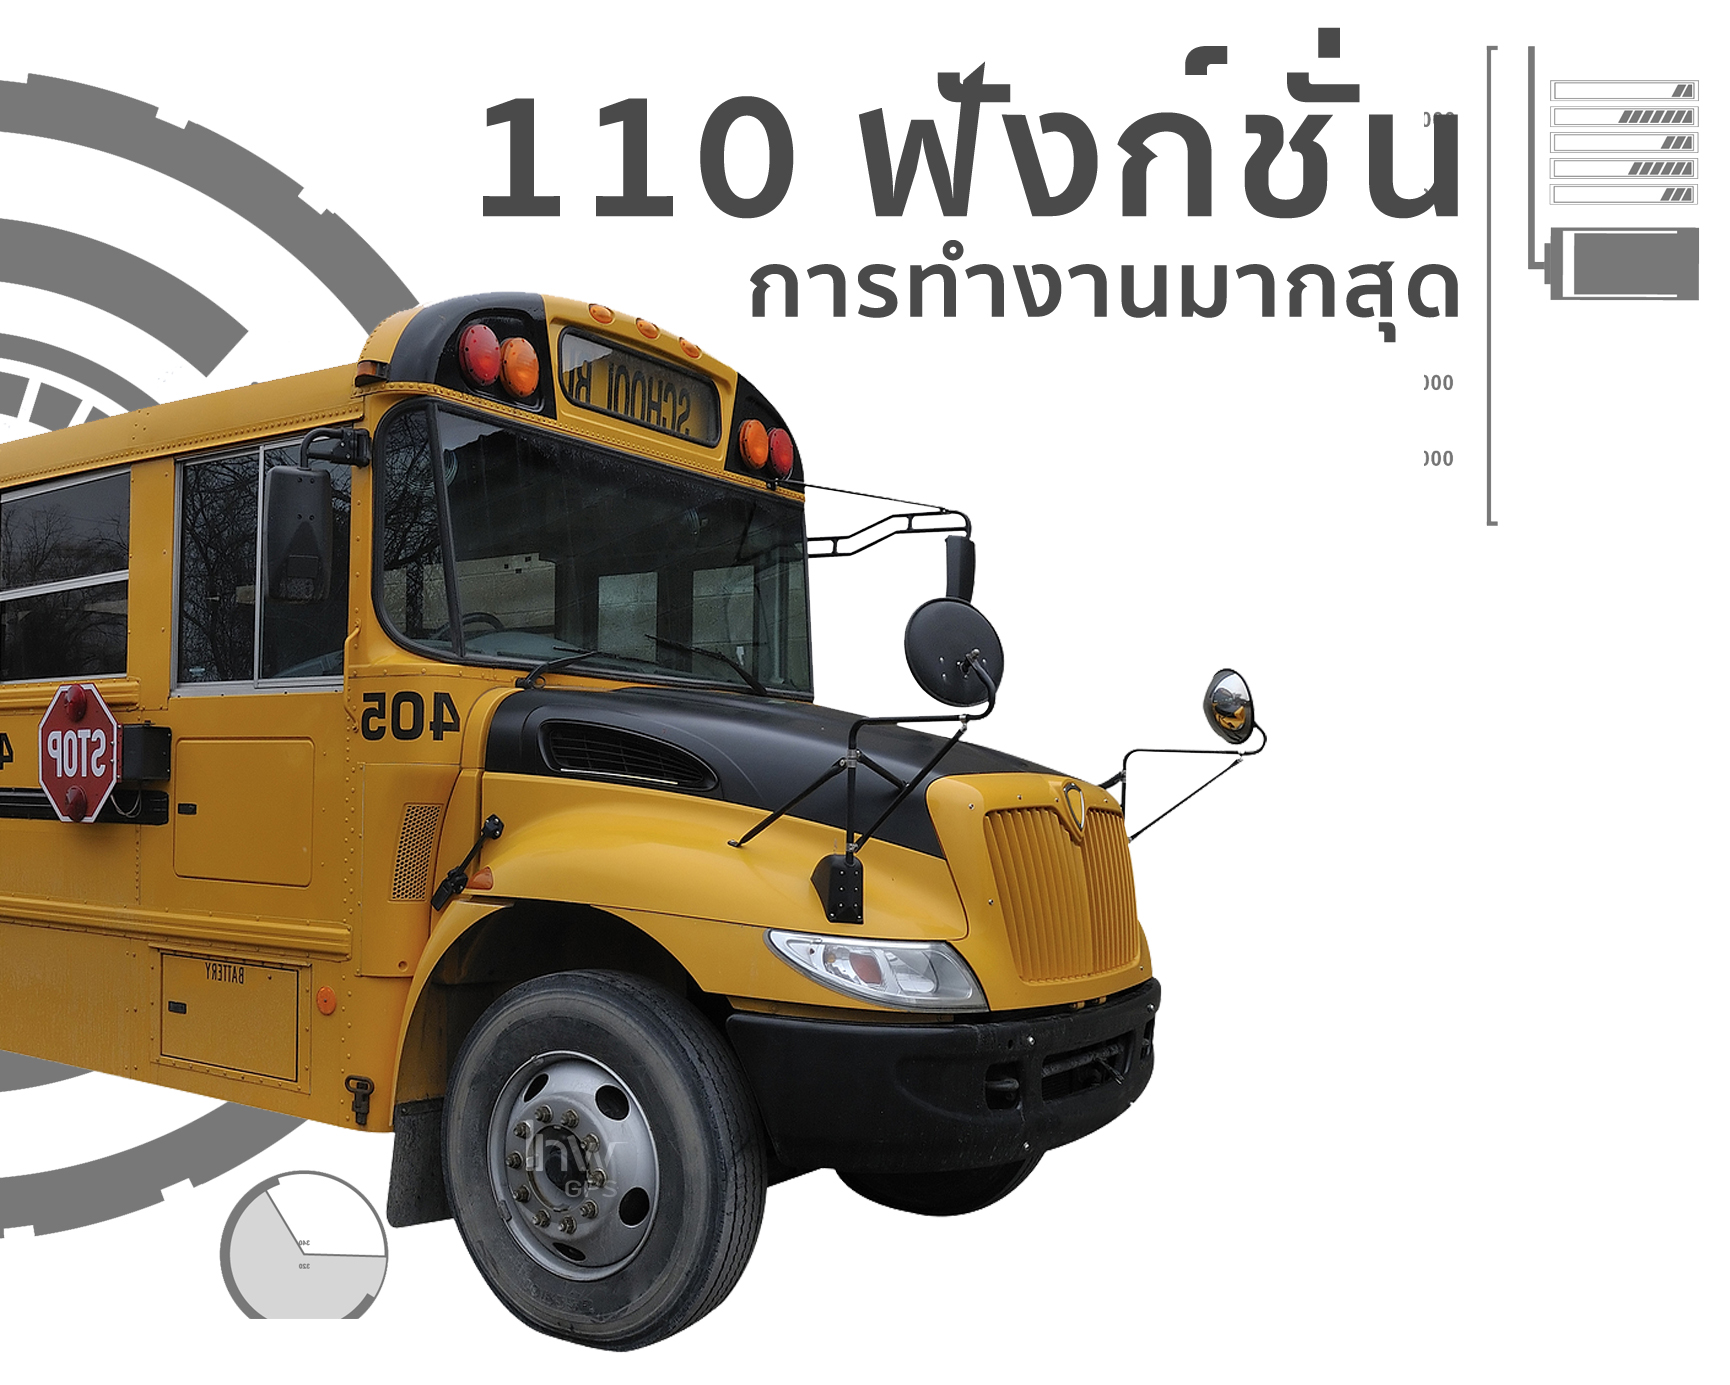 จีพีเอสรถรับส่งนักเรียน จีพีเอสรถโรงเรียน110